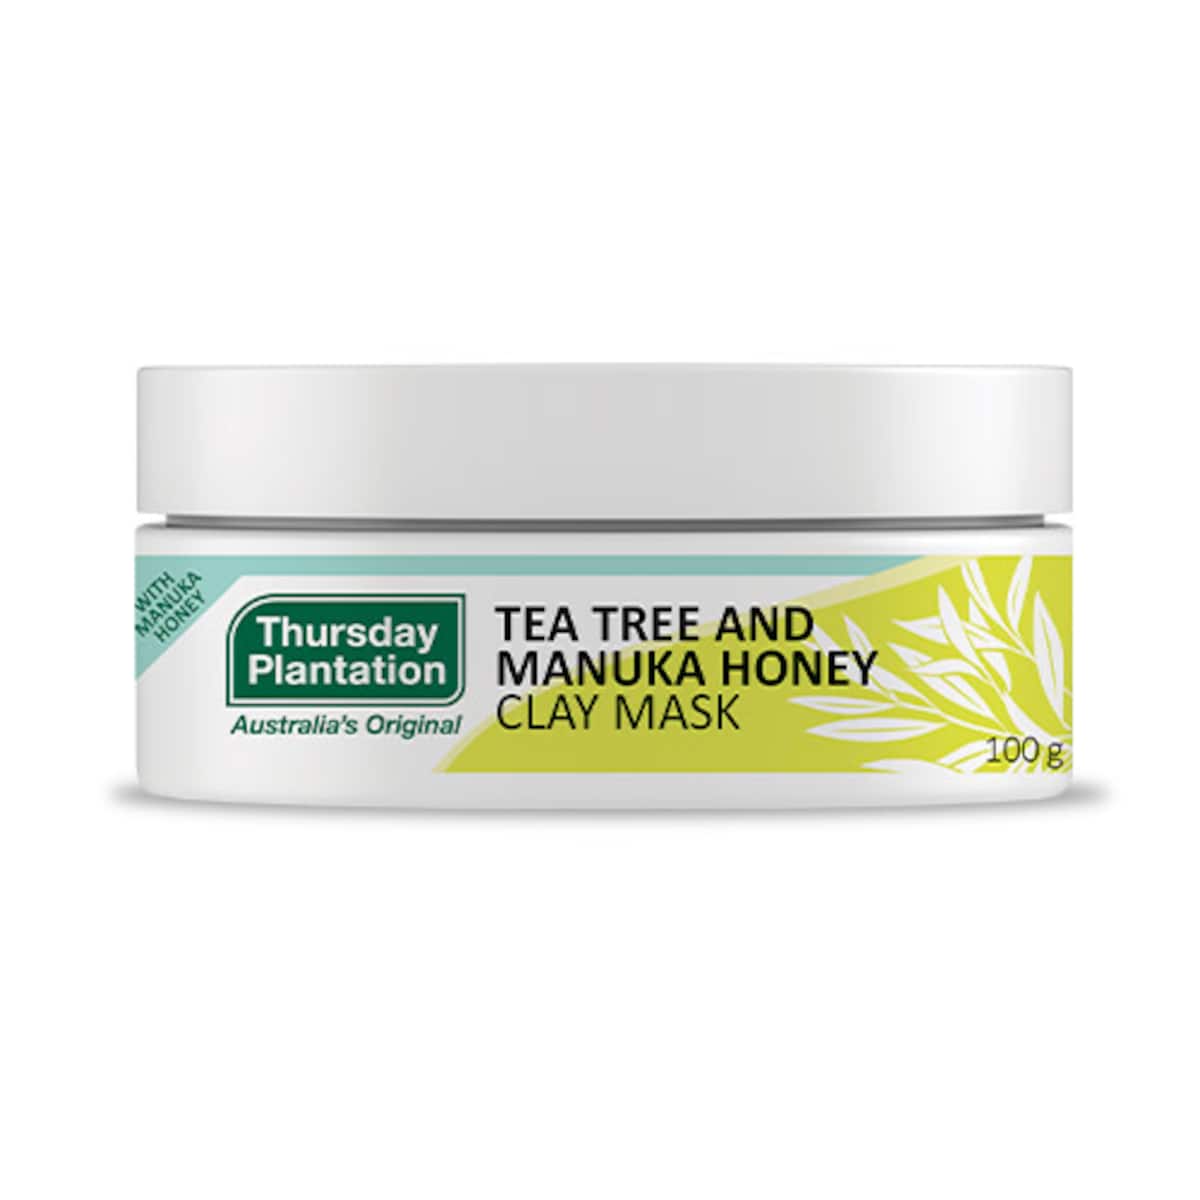 Thursday Plantation Tea Tree Manuka Honey Clay Mask 100g